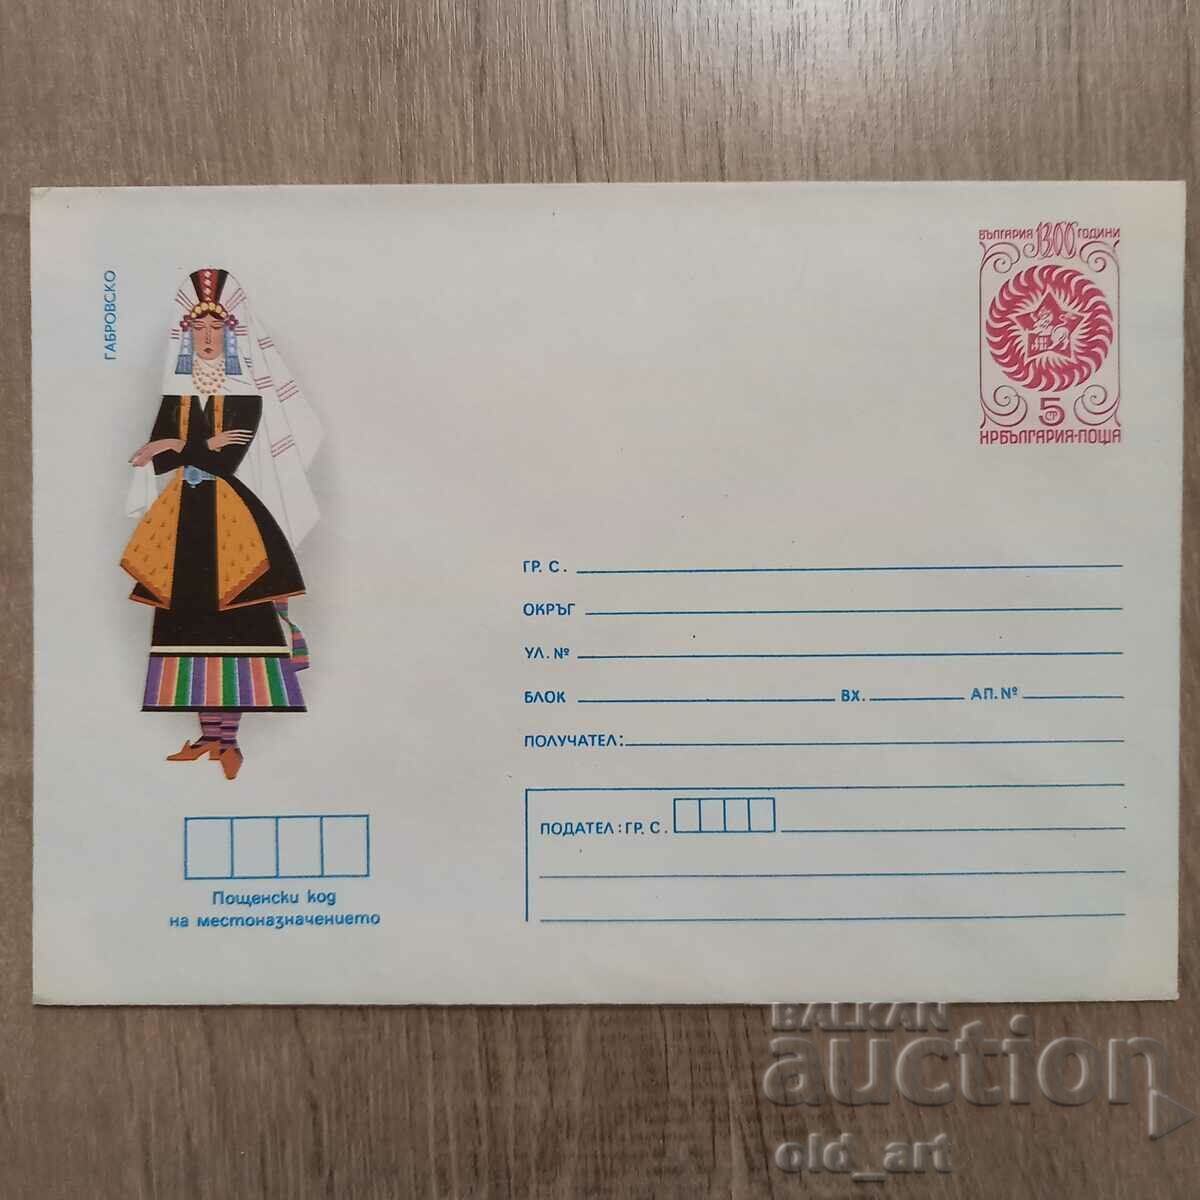 Ταχυδρομικός φάκελος - Λαϊκές φορεσιές - Γκάμπροβο